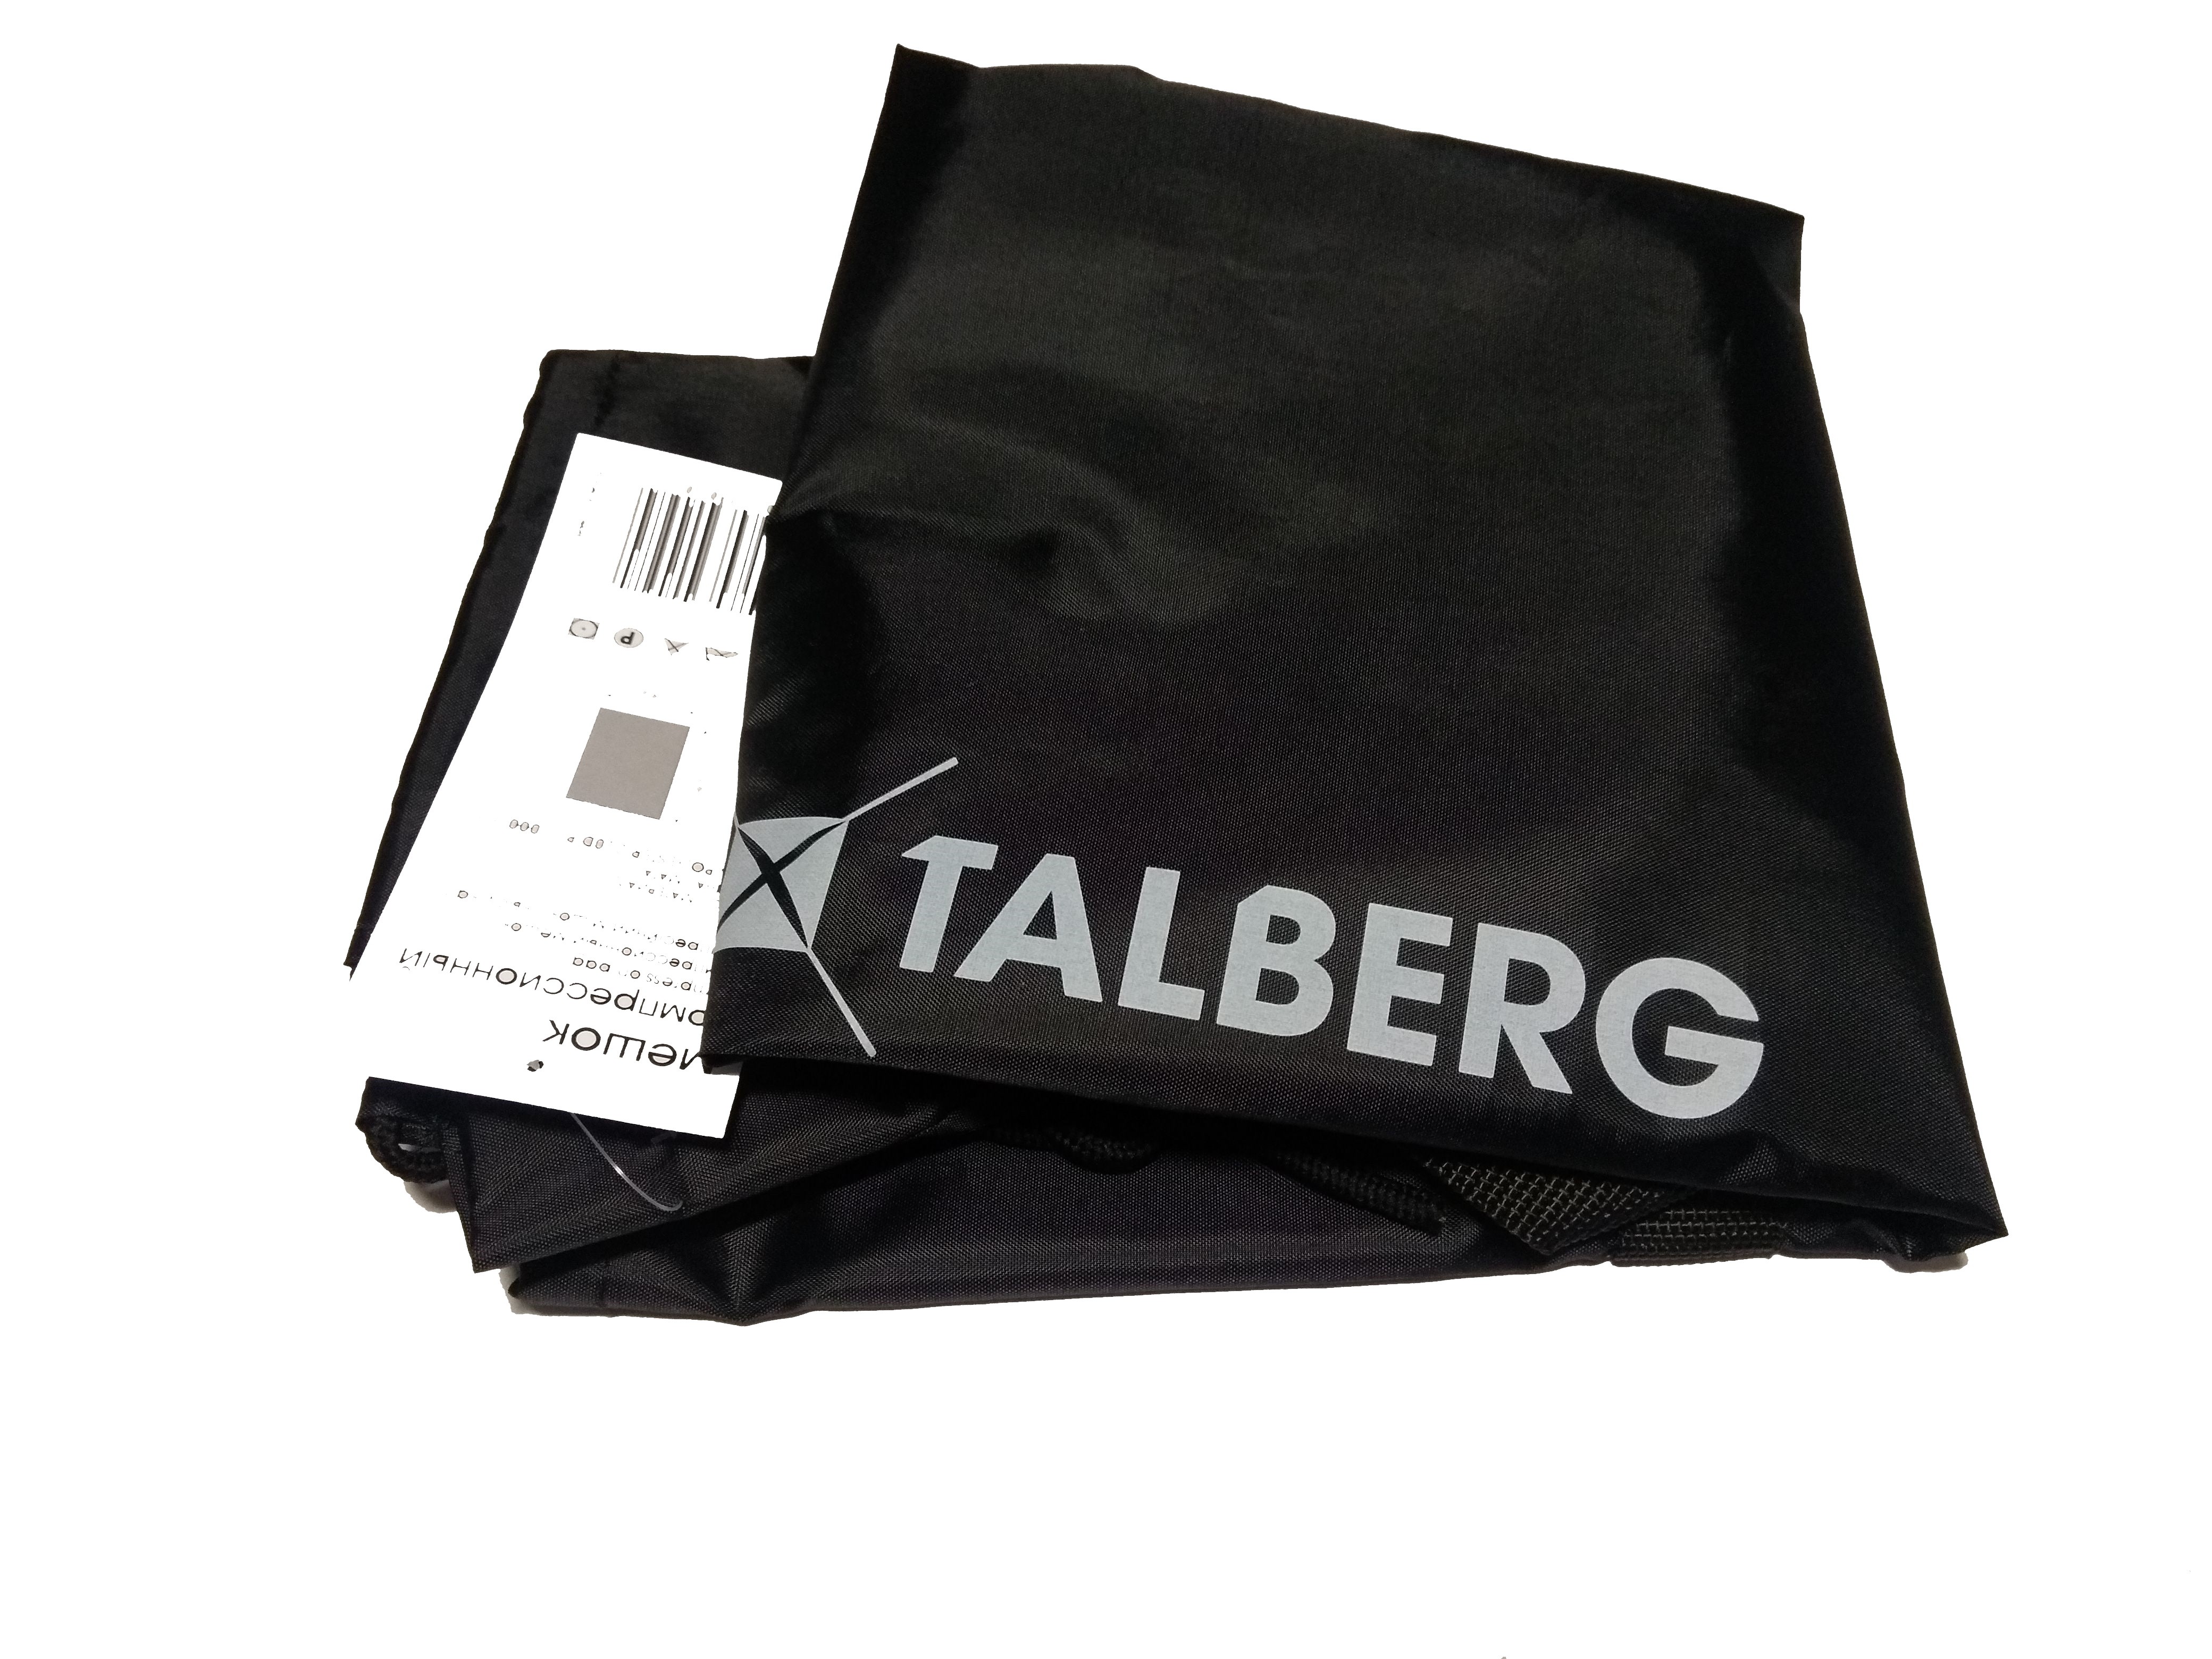 Мешок Talberg Compression Bag компрессионный - фото 1